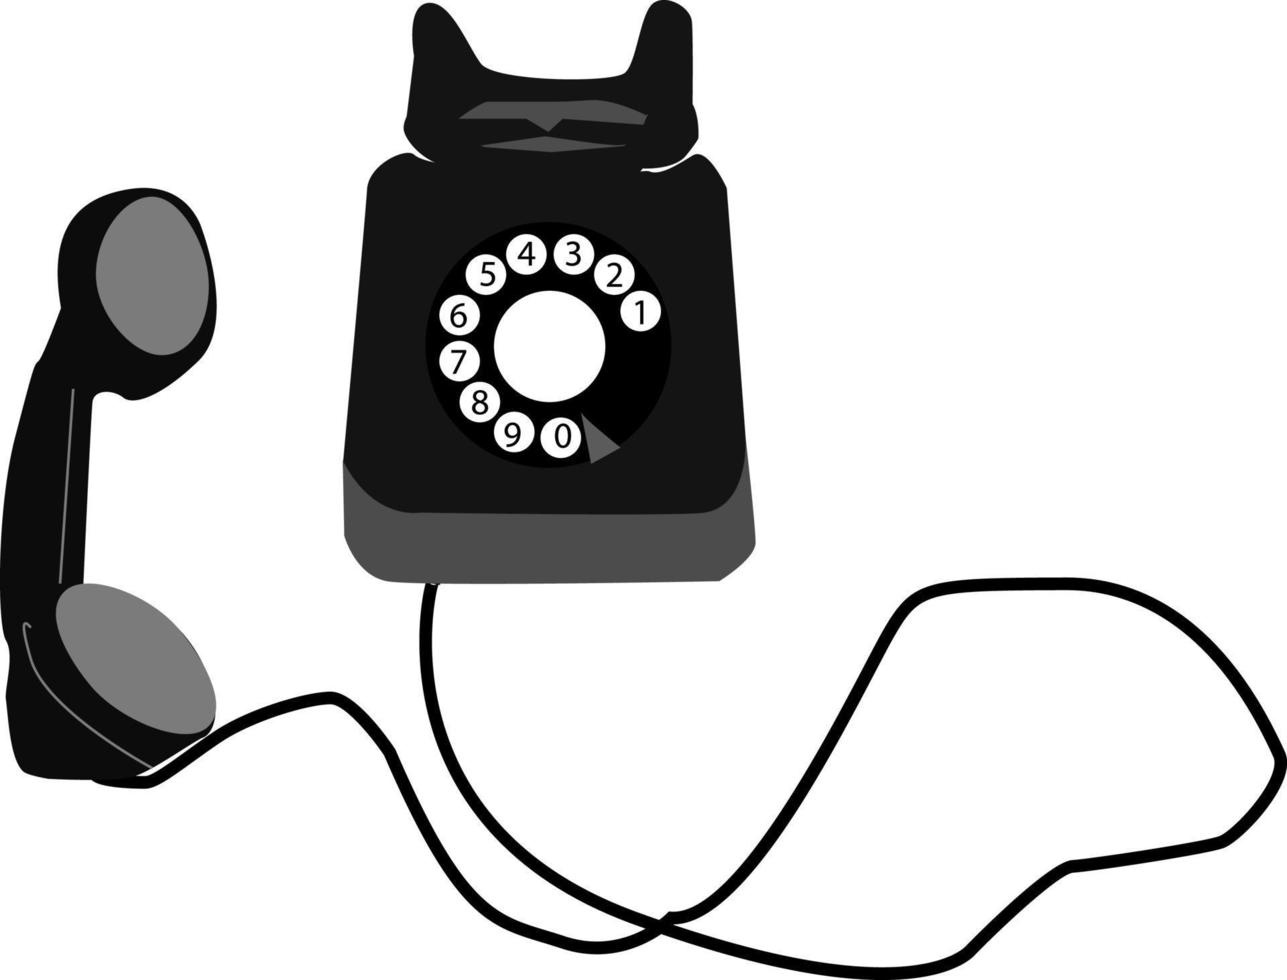 gammal telefon, illustration, vektor på vit bakgrund.